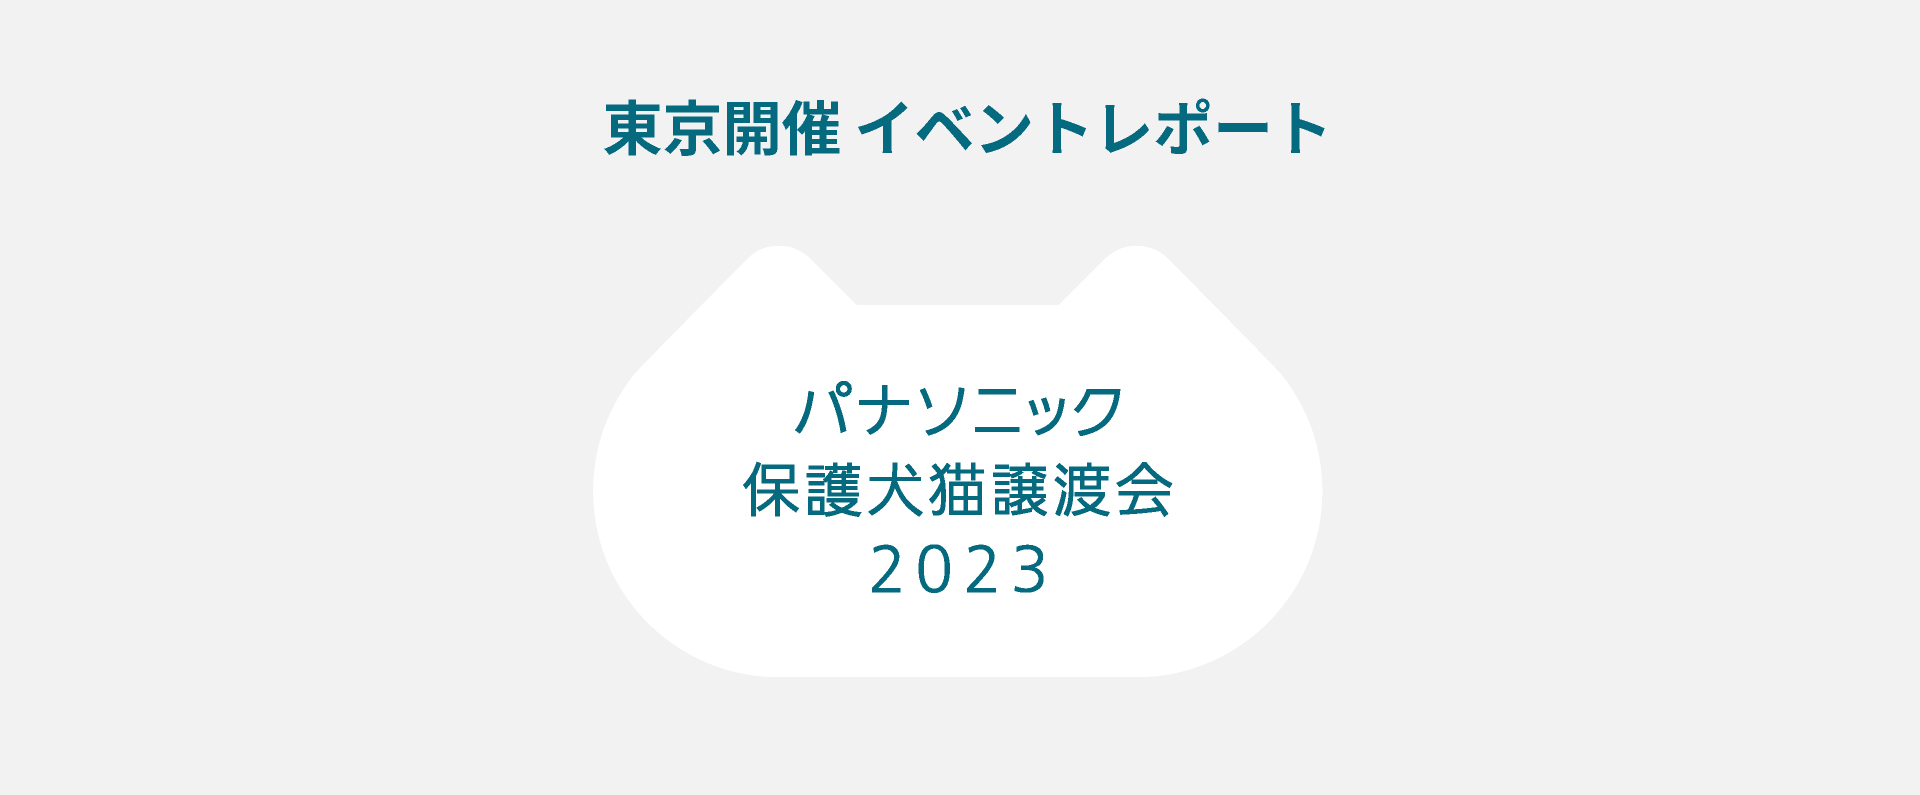 パナソニック保護犬猫譲渡会 東京開催のイベントレポートにリンクします